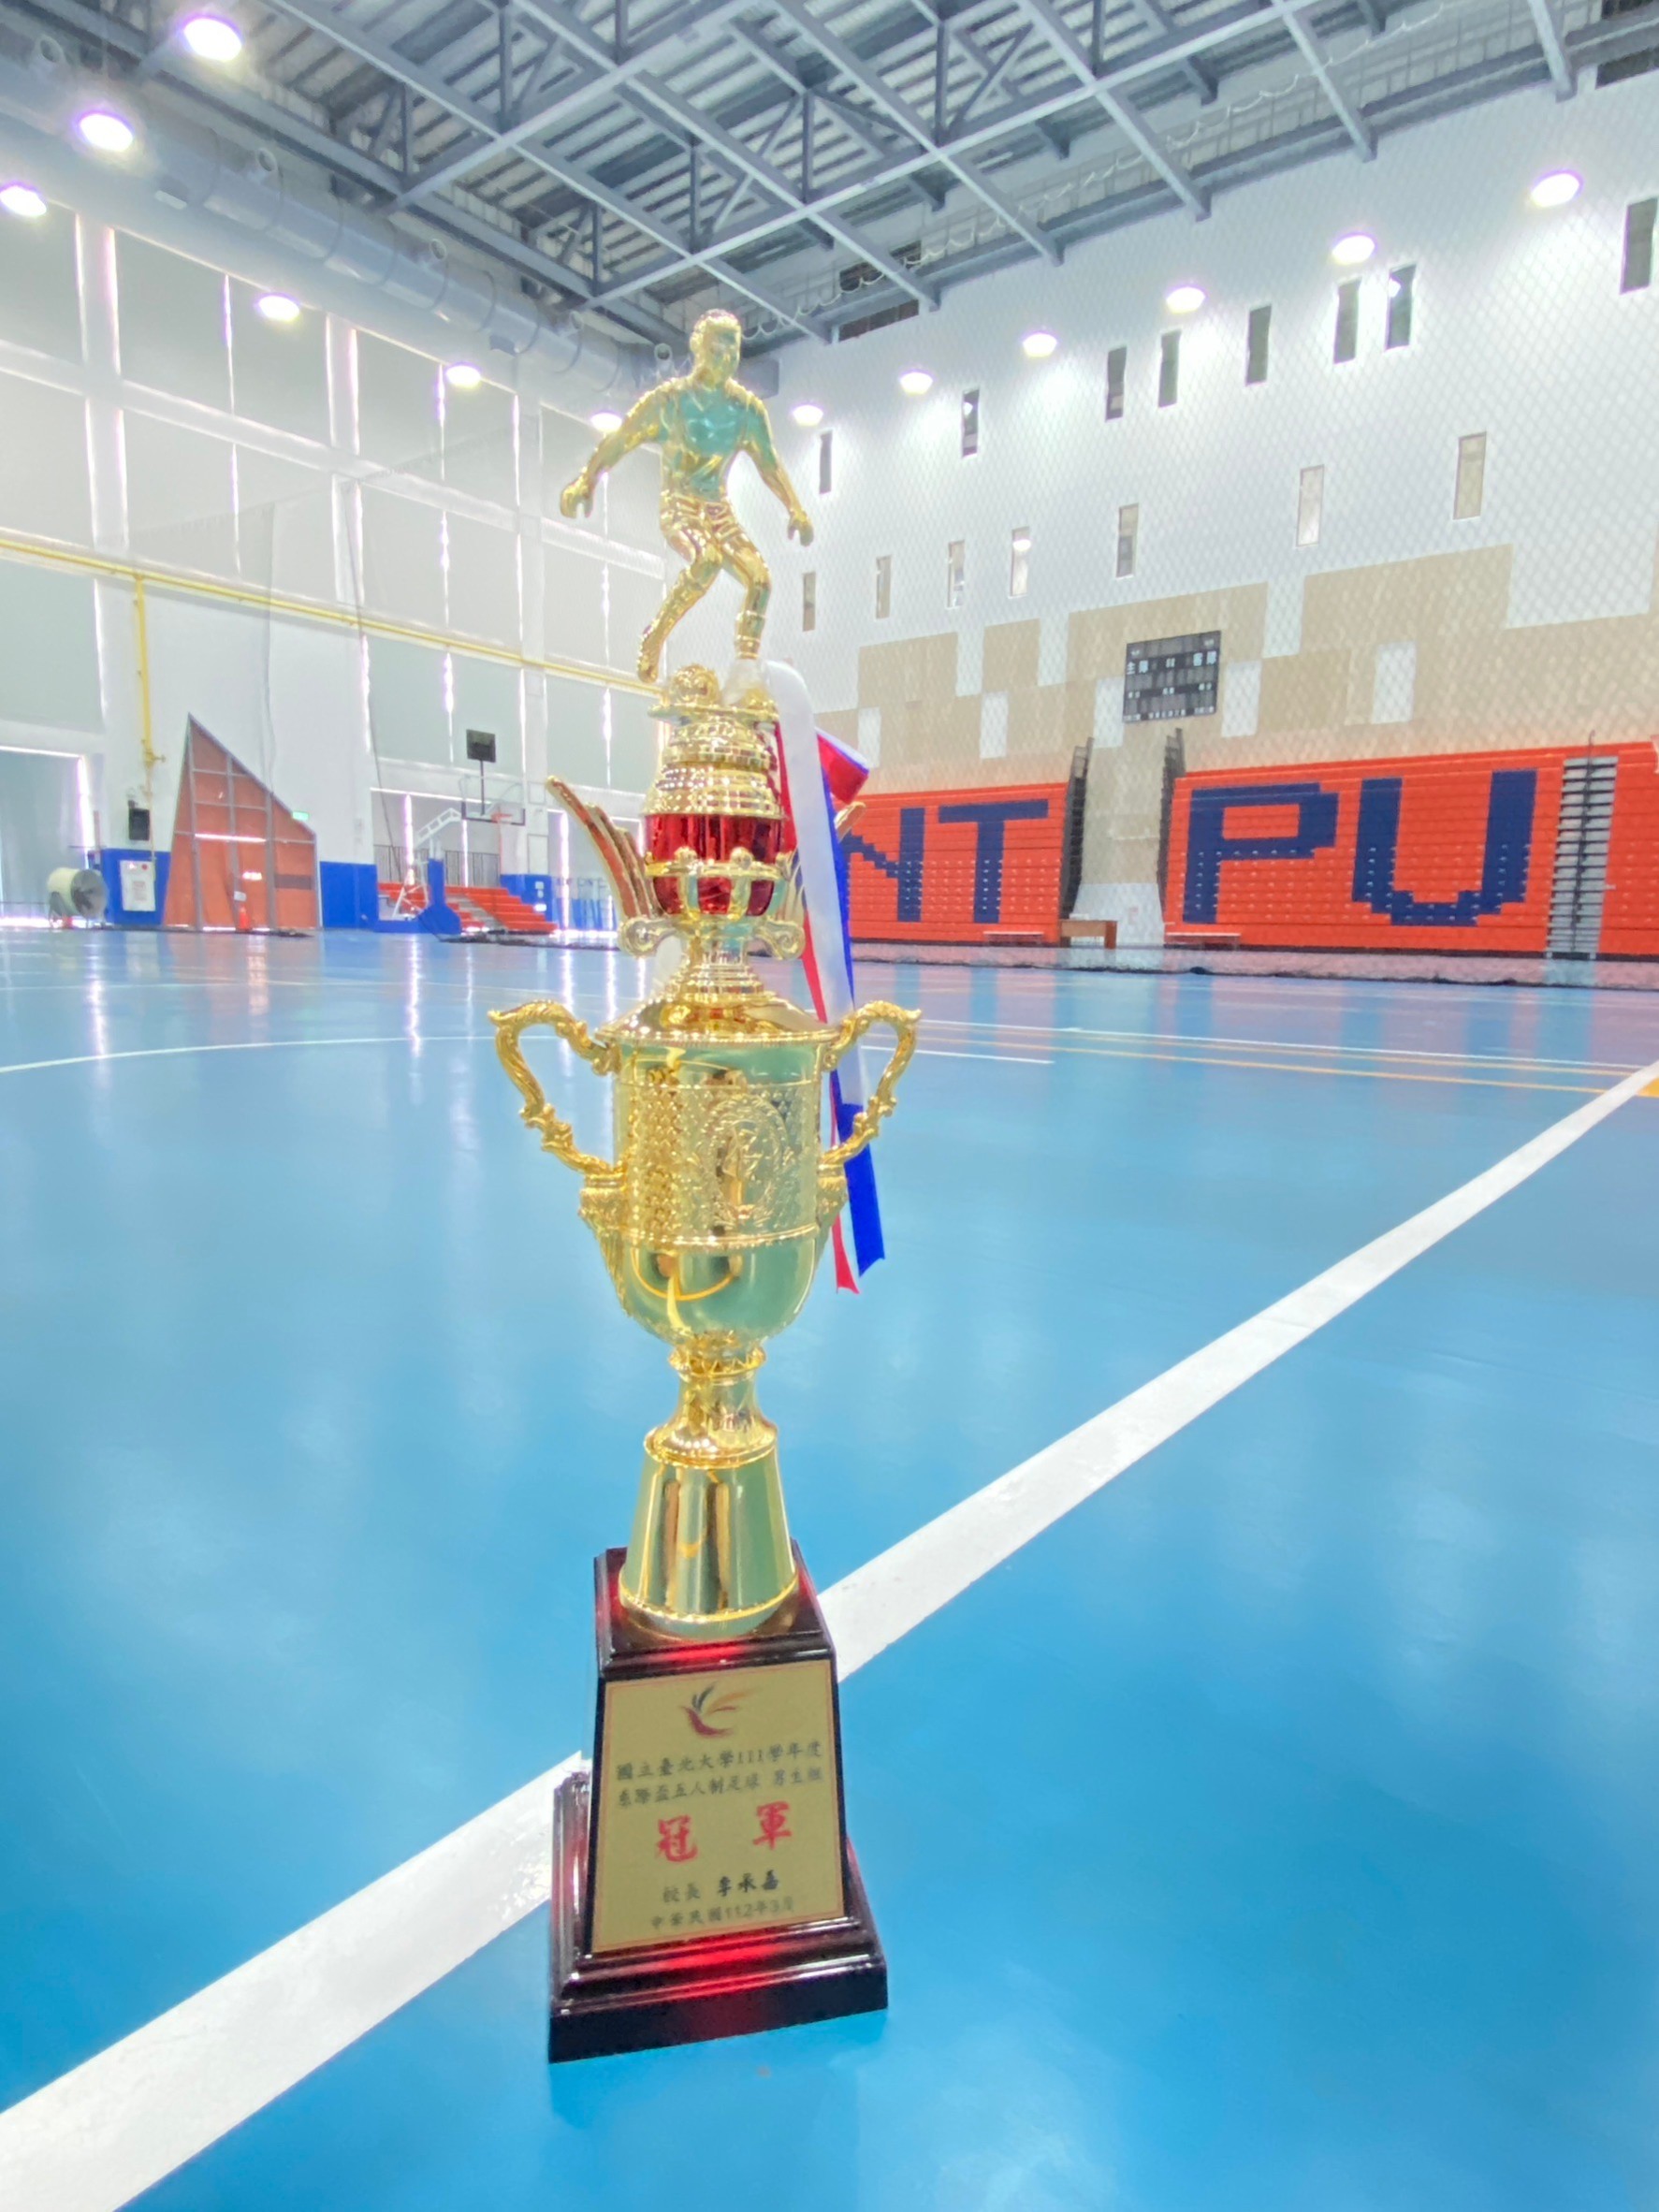 GMBA won the Champion of NTPU's Futsal Game